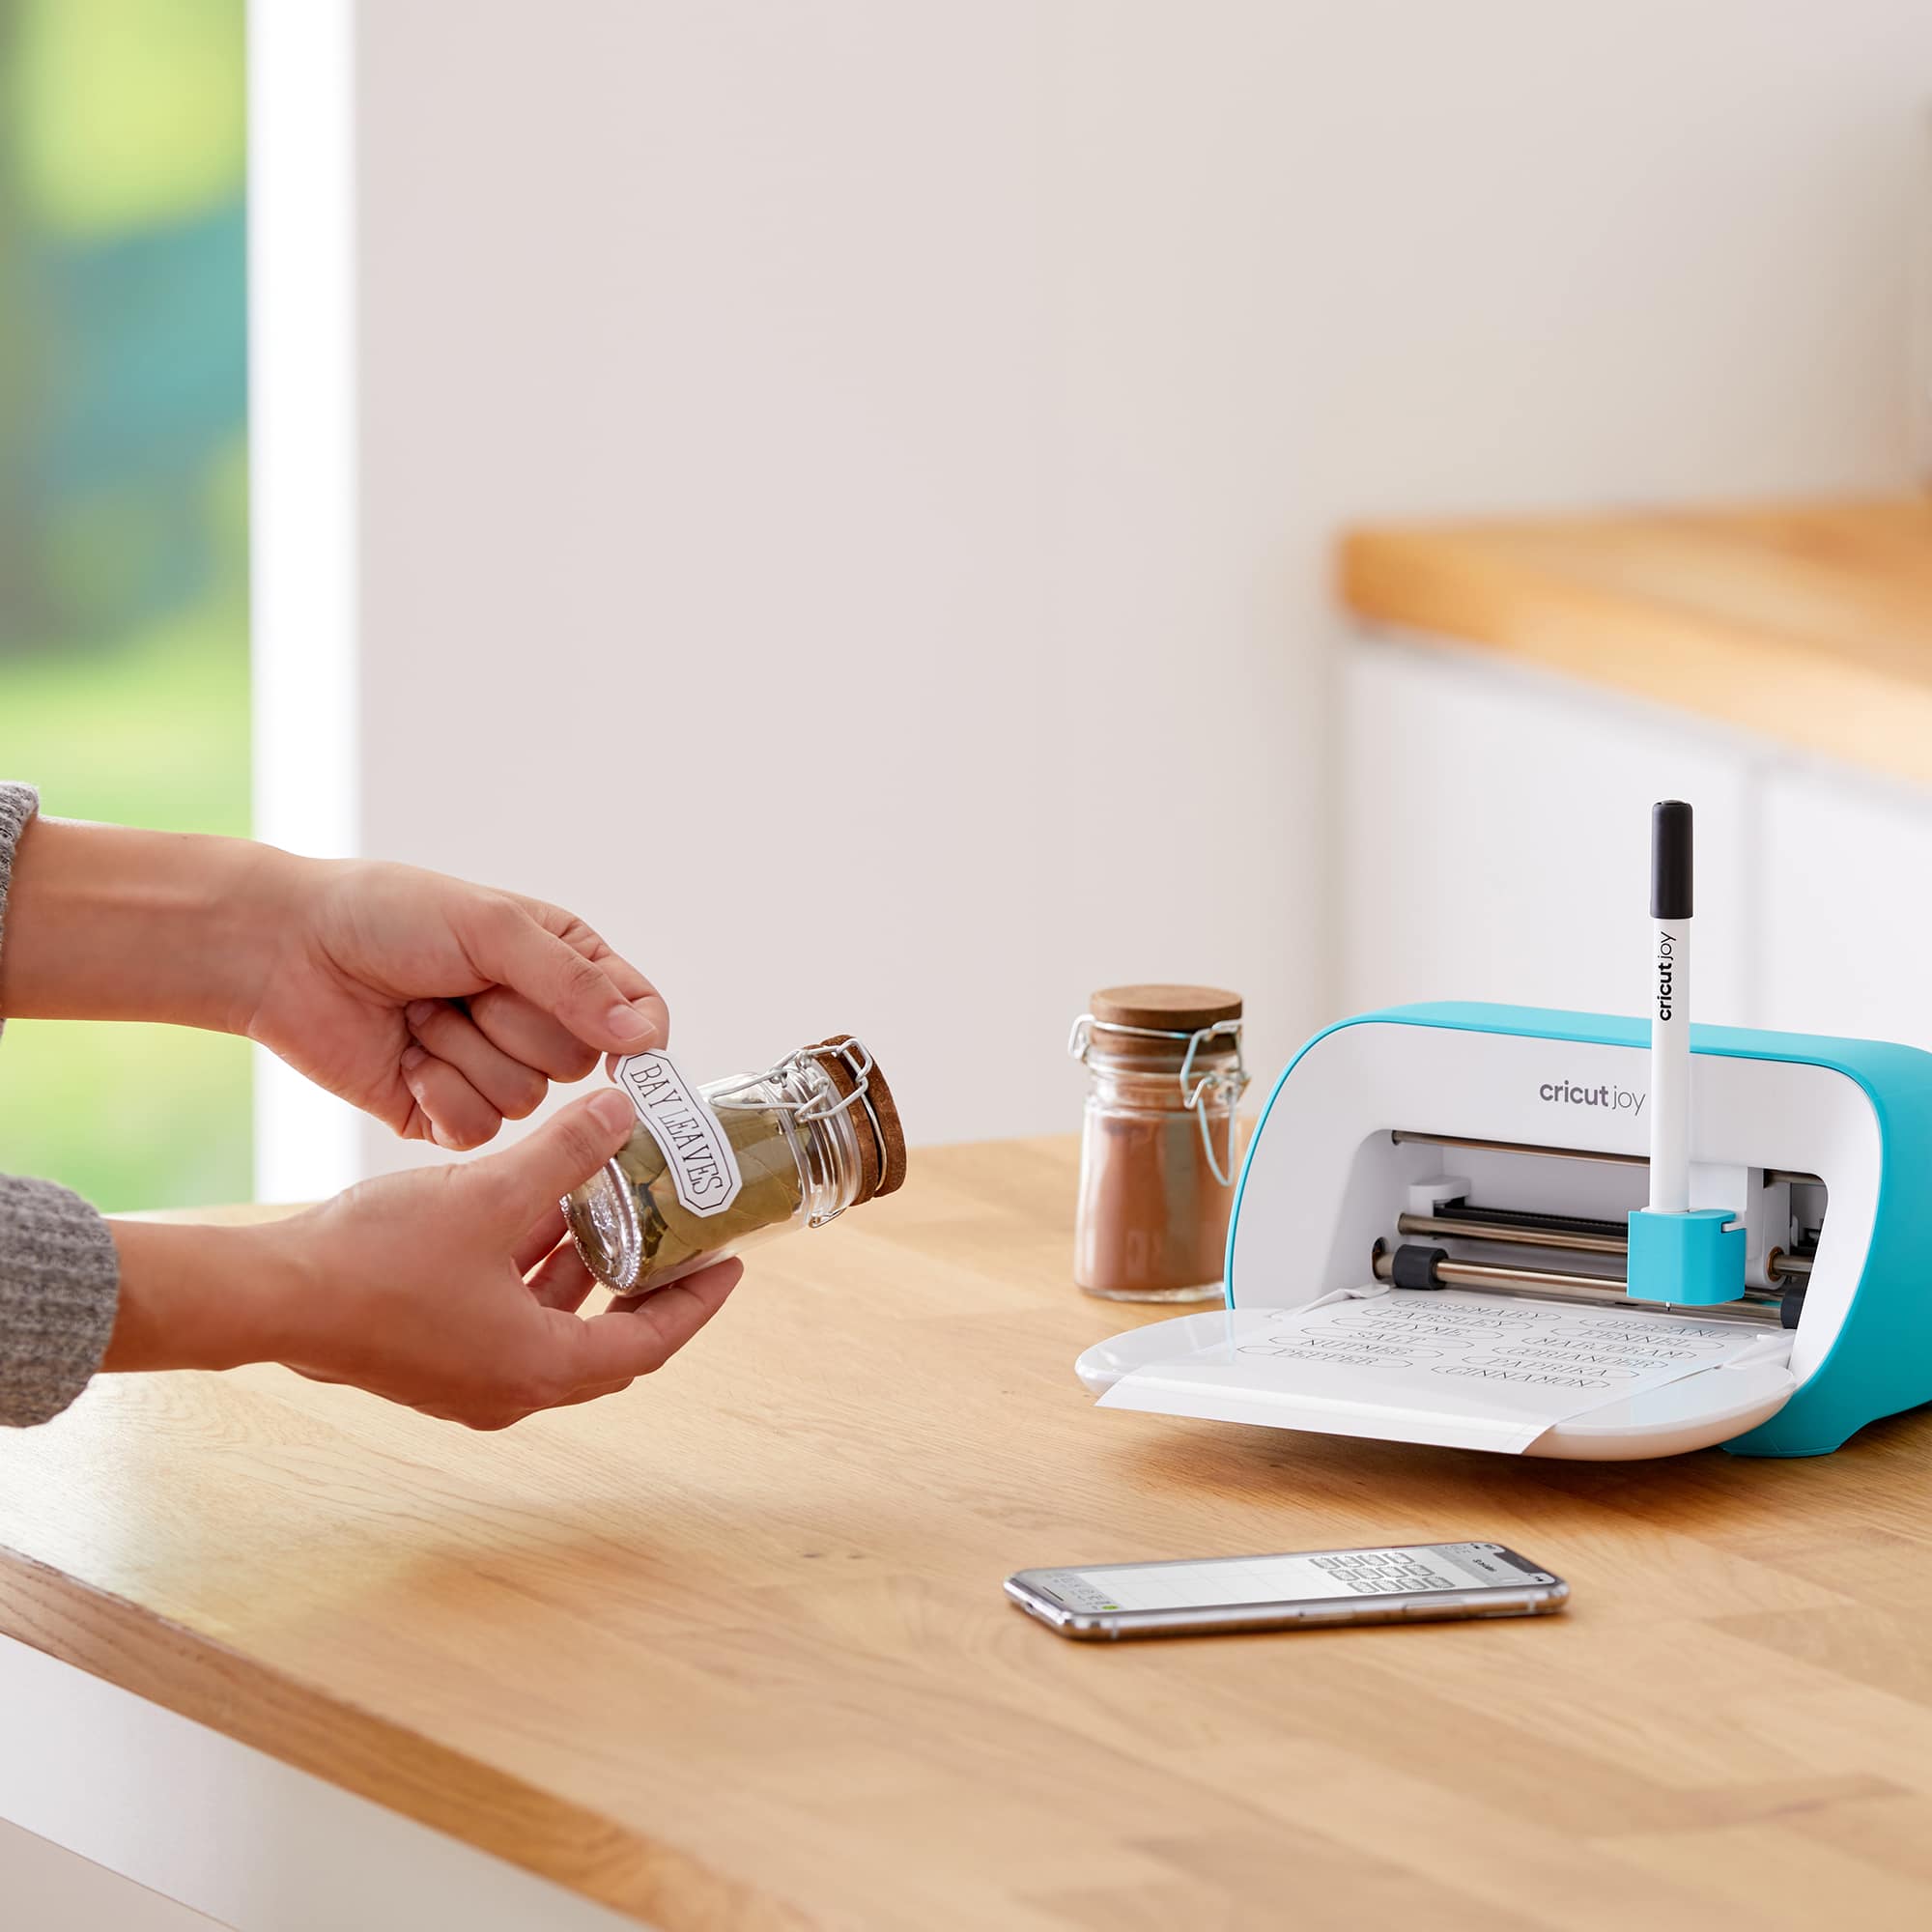 Meet Cricut Joy, The Smallest Smart Cutting Machine – Craft Box Girls